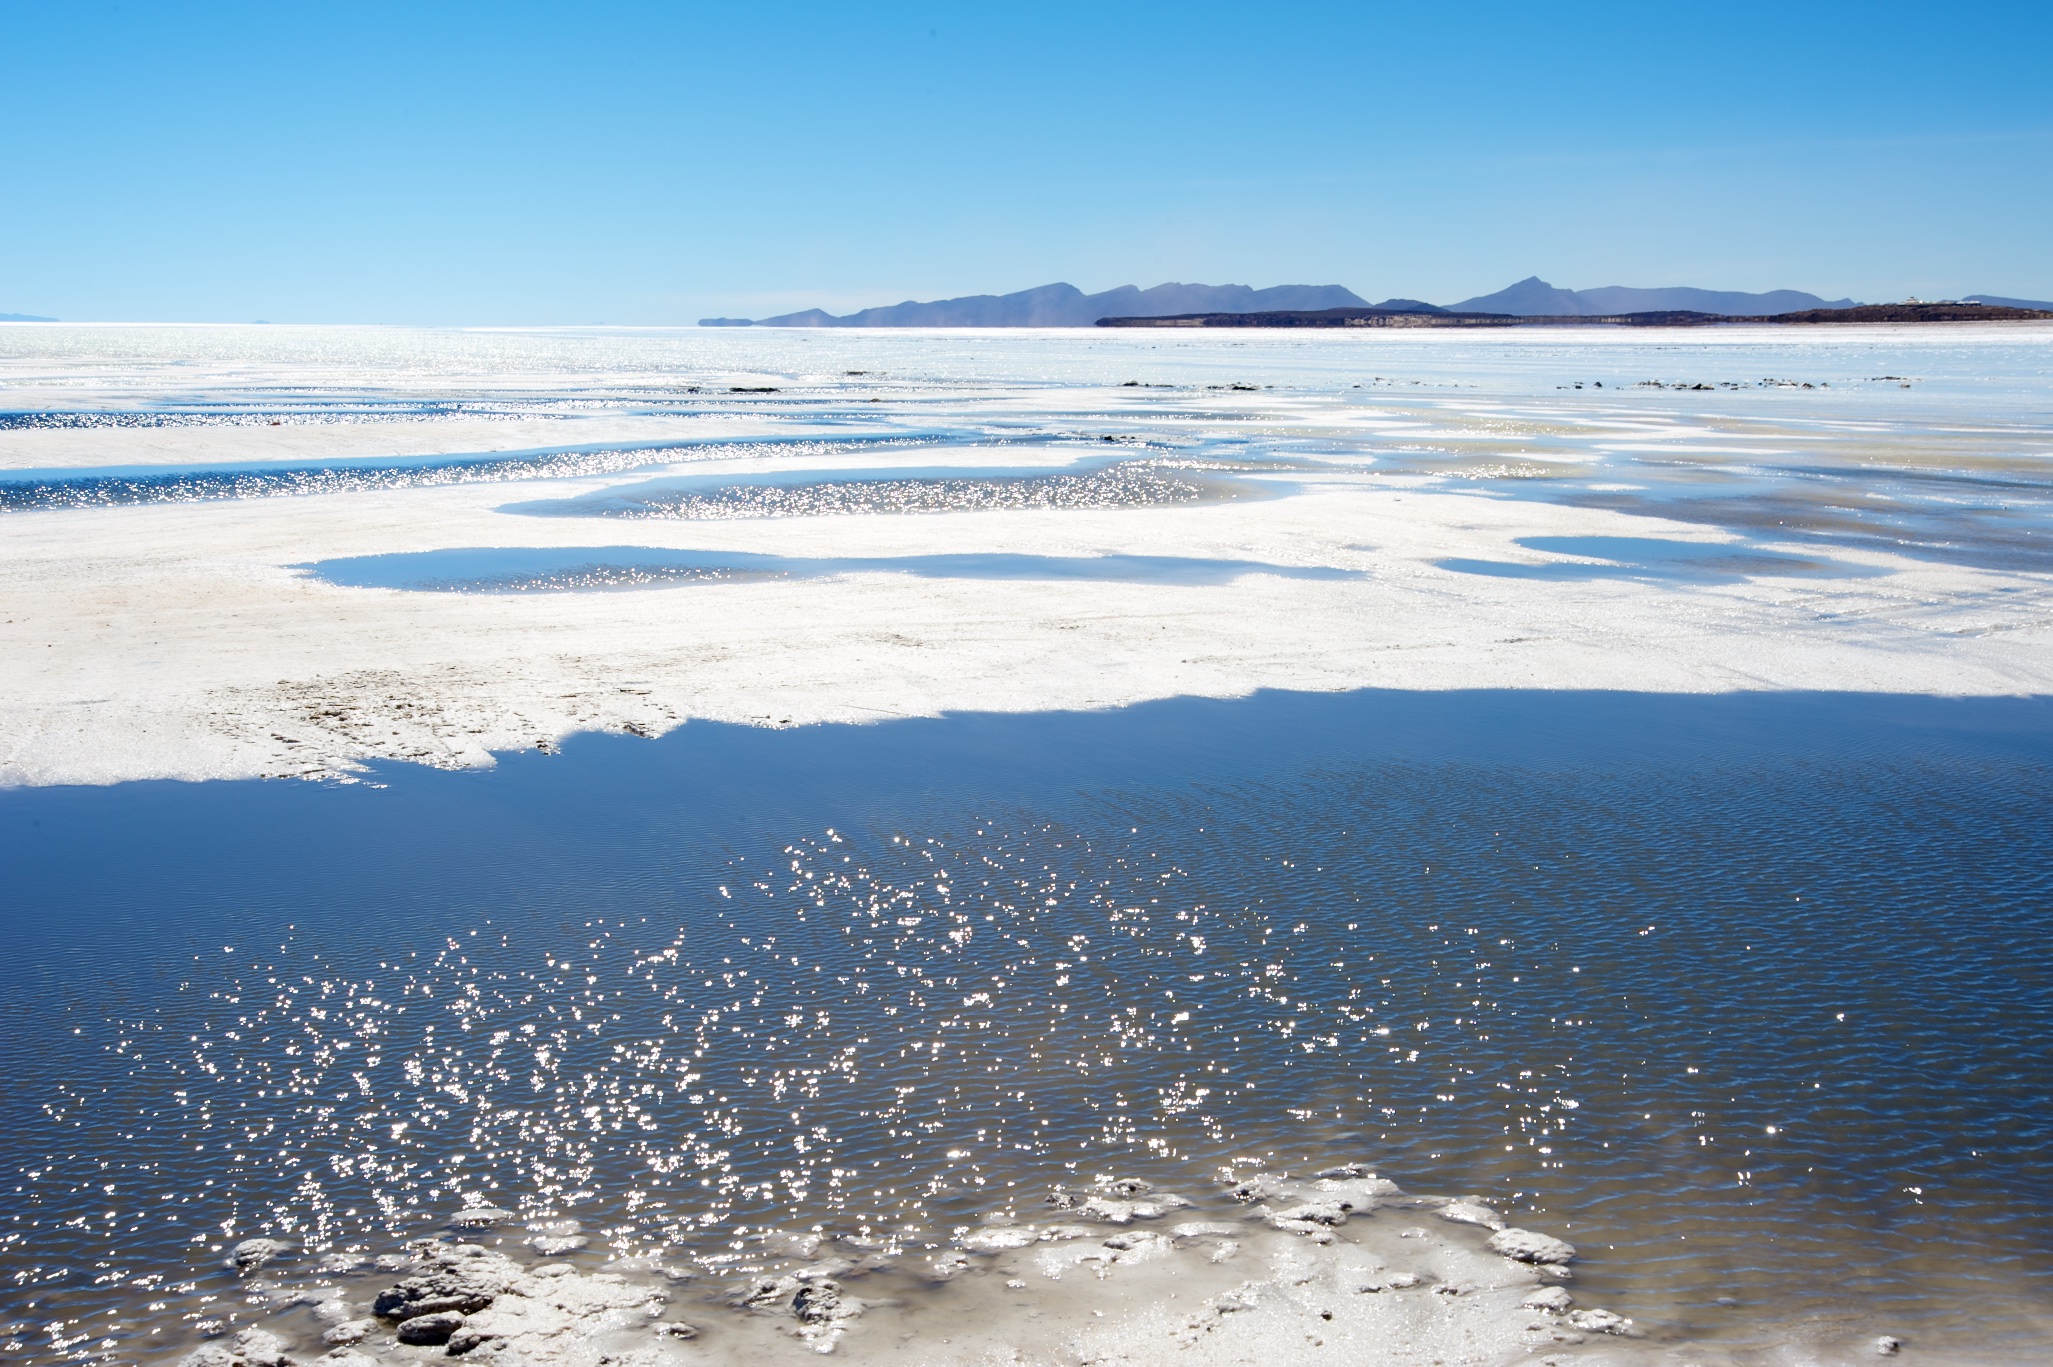  Salt Flats, Salar de Uyuni, Bolivia 